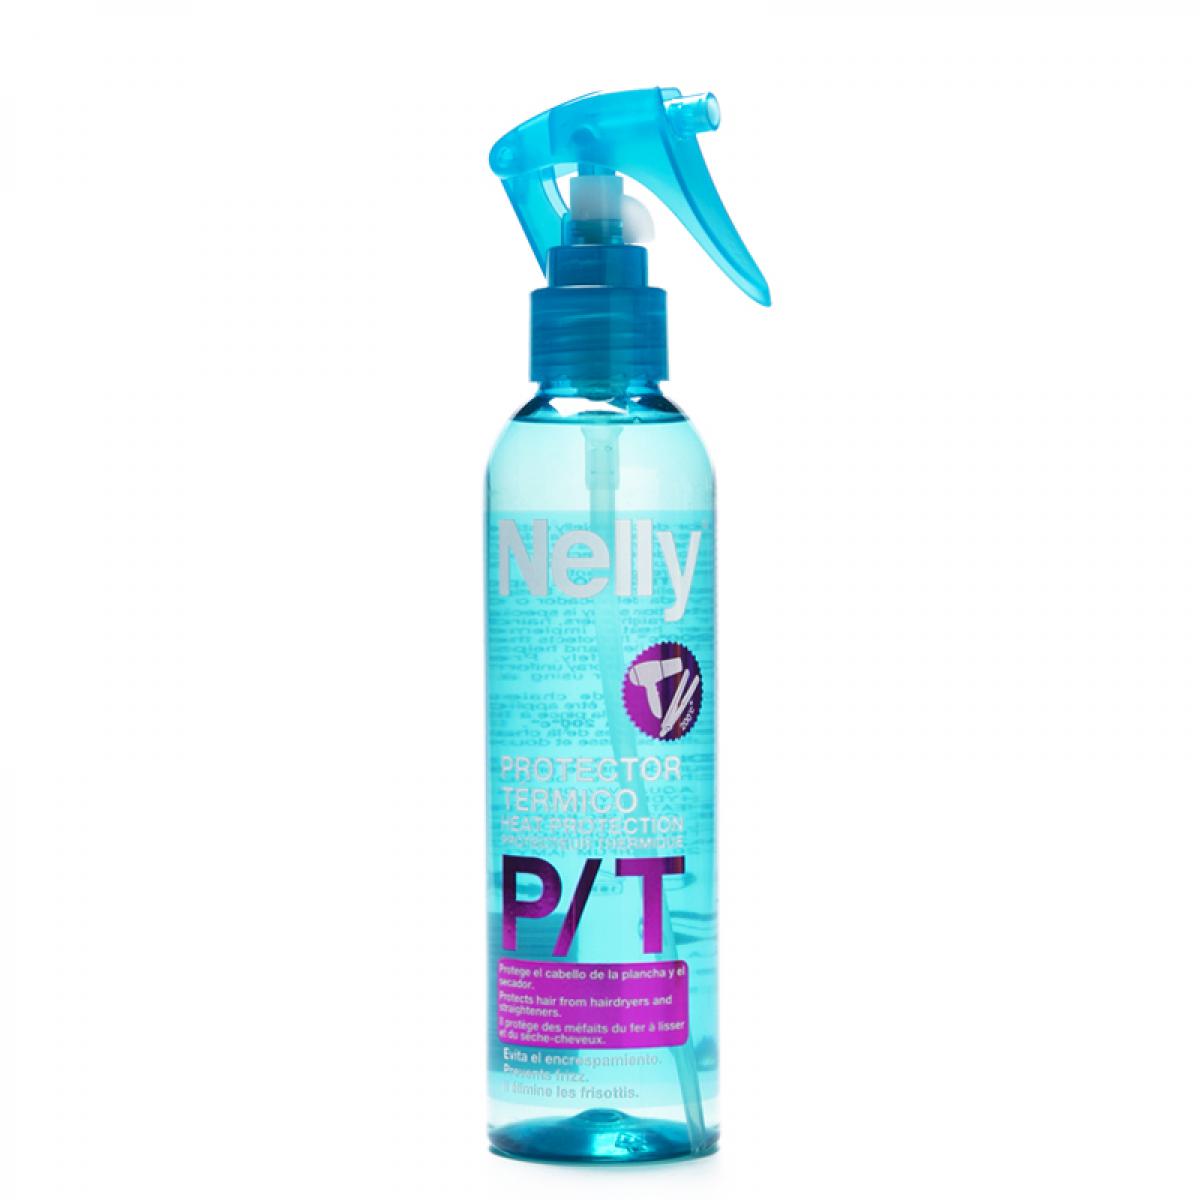 اسپری محافظ حرارتی قبل از براشینگ حجم 200 میل - Nelly Heat Protector Spray 200ml